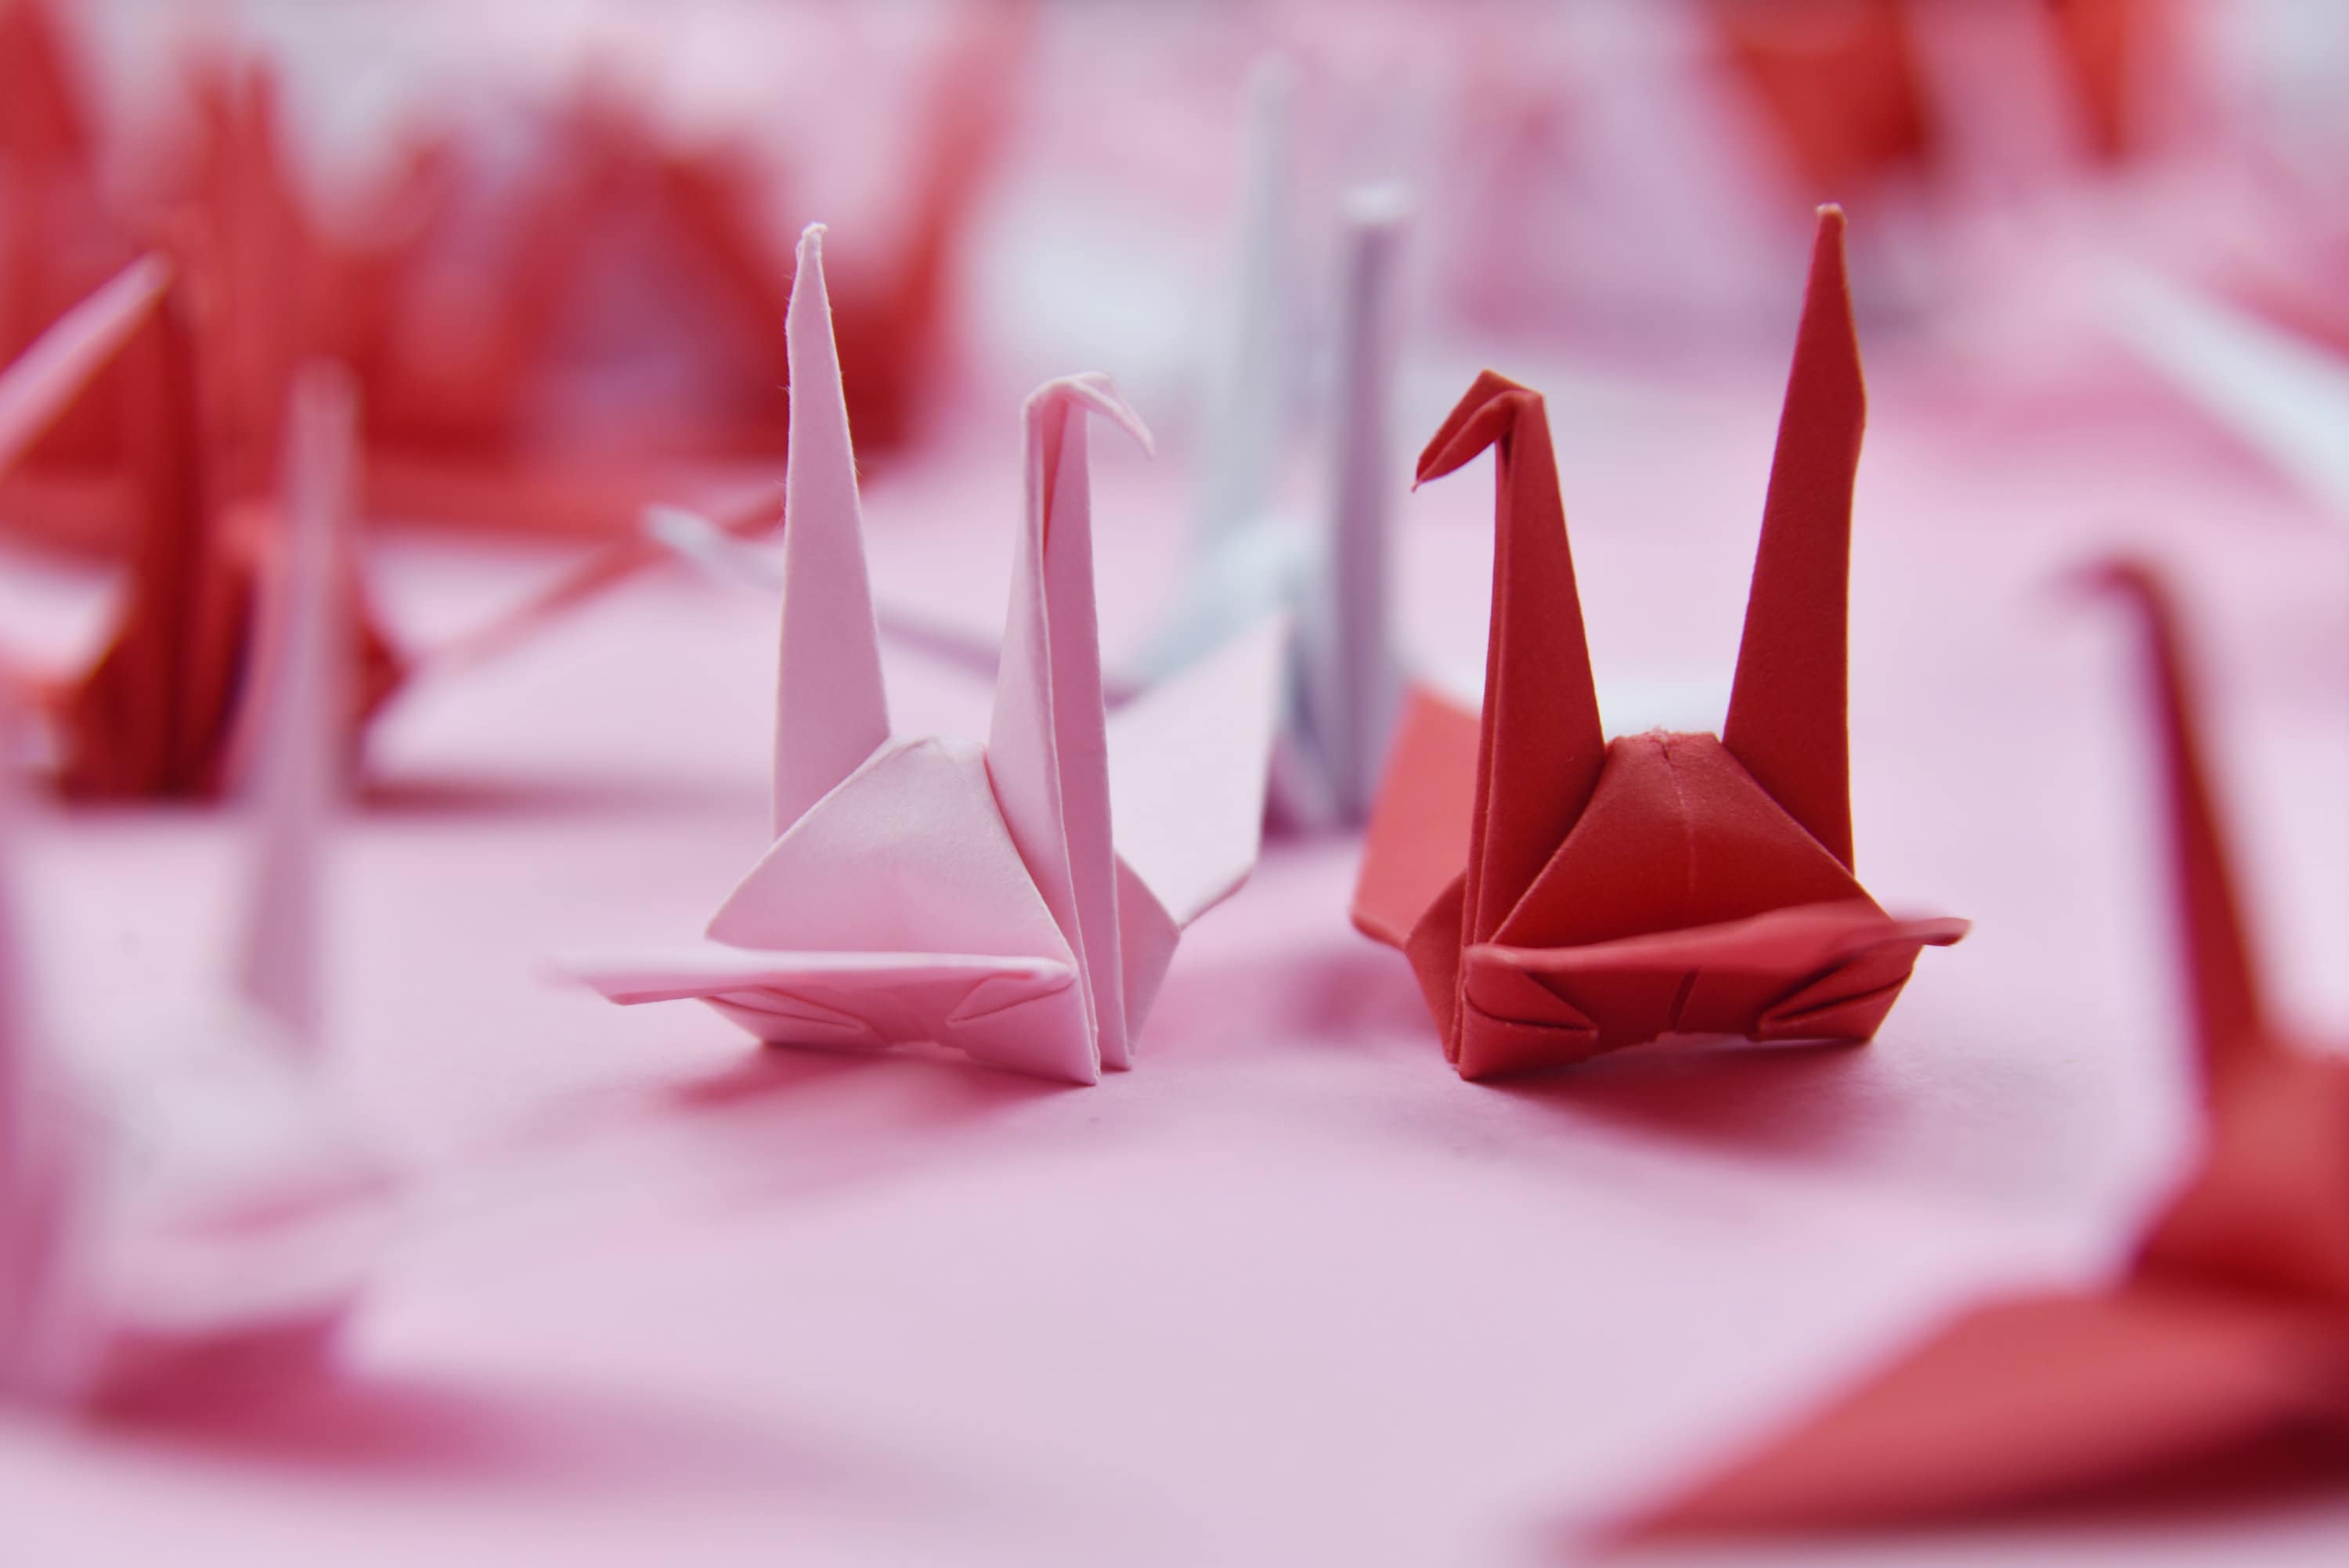 1000 gru di carta origami - tonalità rosa rossa - realizzate in 7,5 cm (3x3 pollici) - decorazione di nozze, matrimonio giapponese, San Valentino